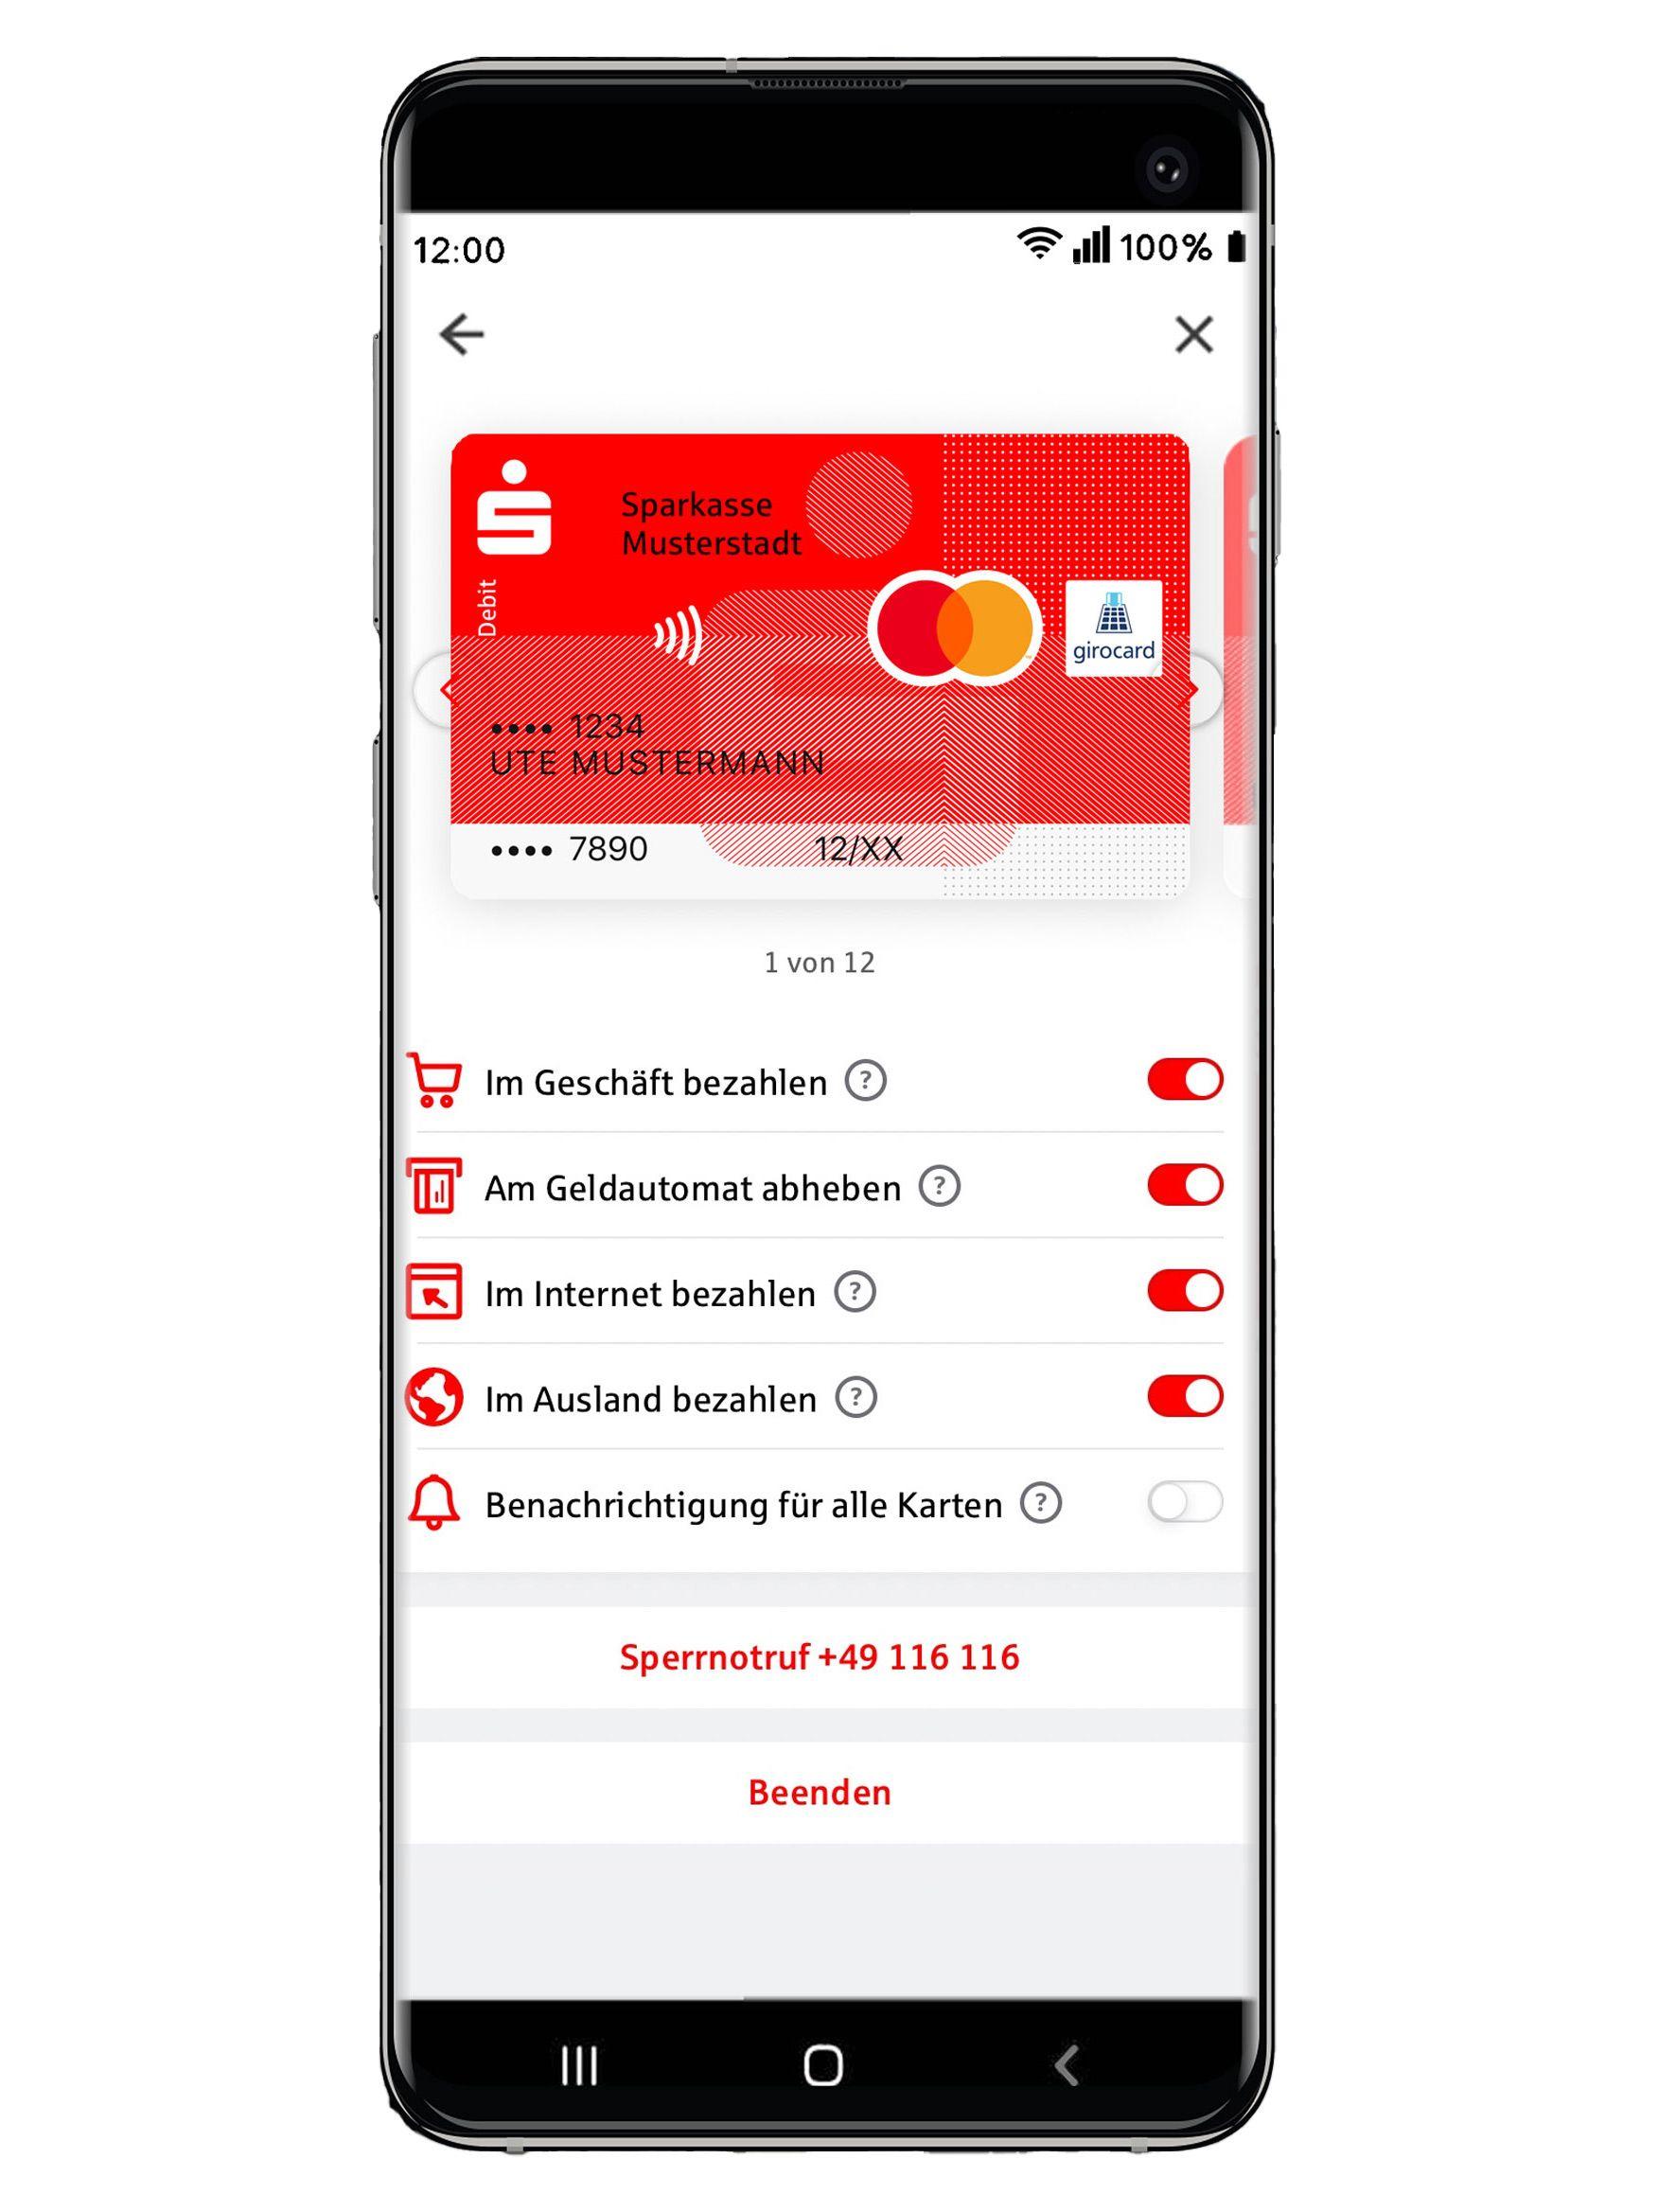 Ein Smartphone-Display mit der digitalen Bezahl-App Mobiles Bezahlen der Sparkasse, vor einem unscharfem Hintergrund. Auf dem Display ist die Sparkassenbankkarte abgebildet und verschiedene Freischaltungen wie z.B. im Ausland bezahlen.